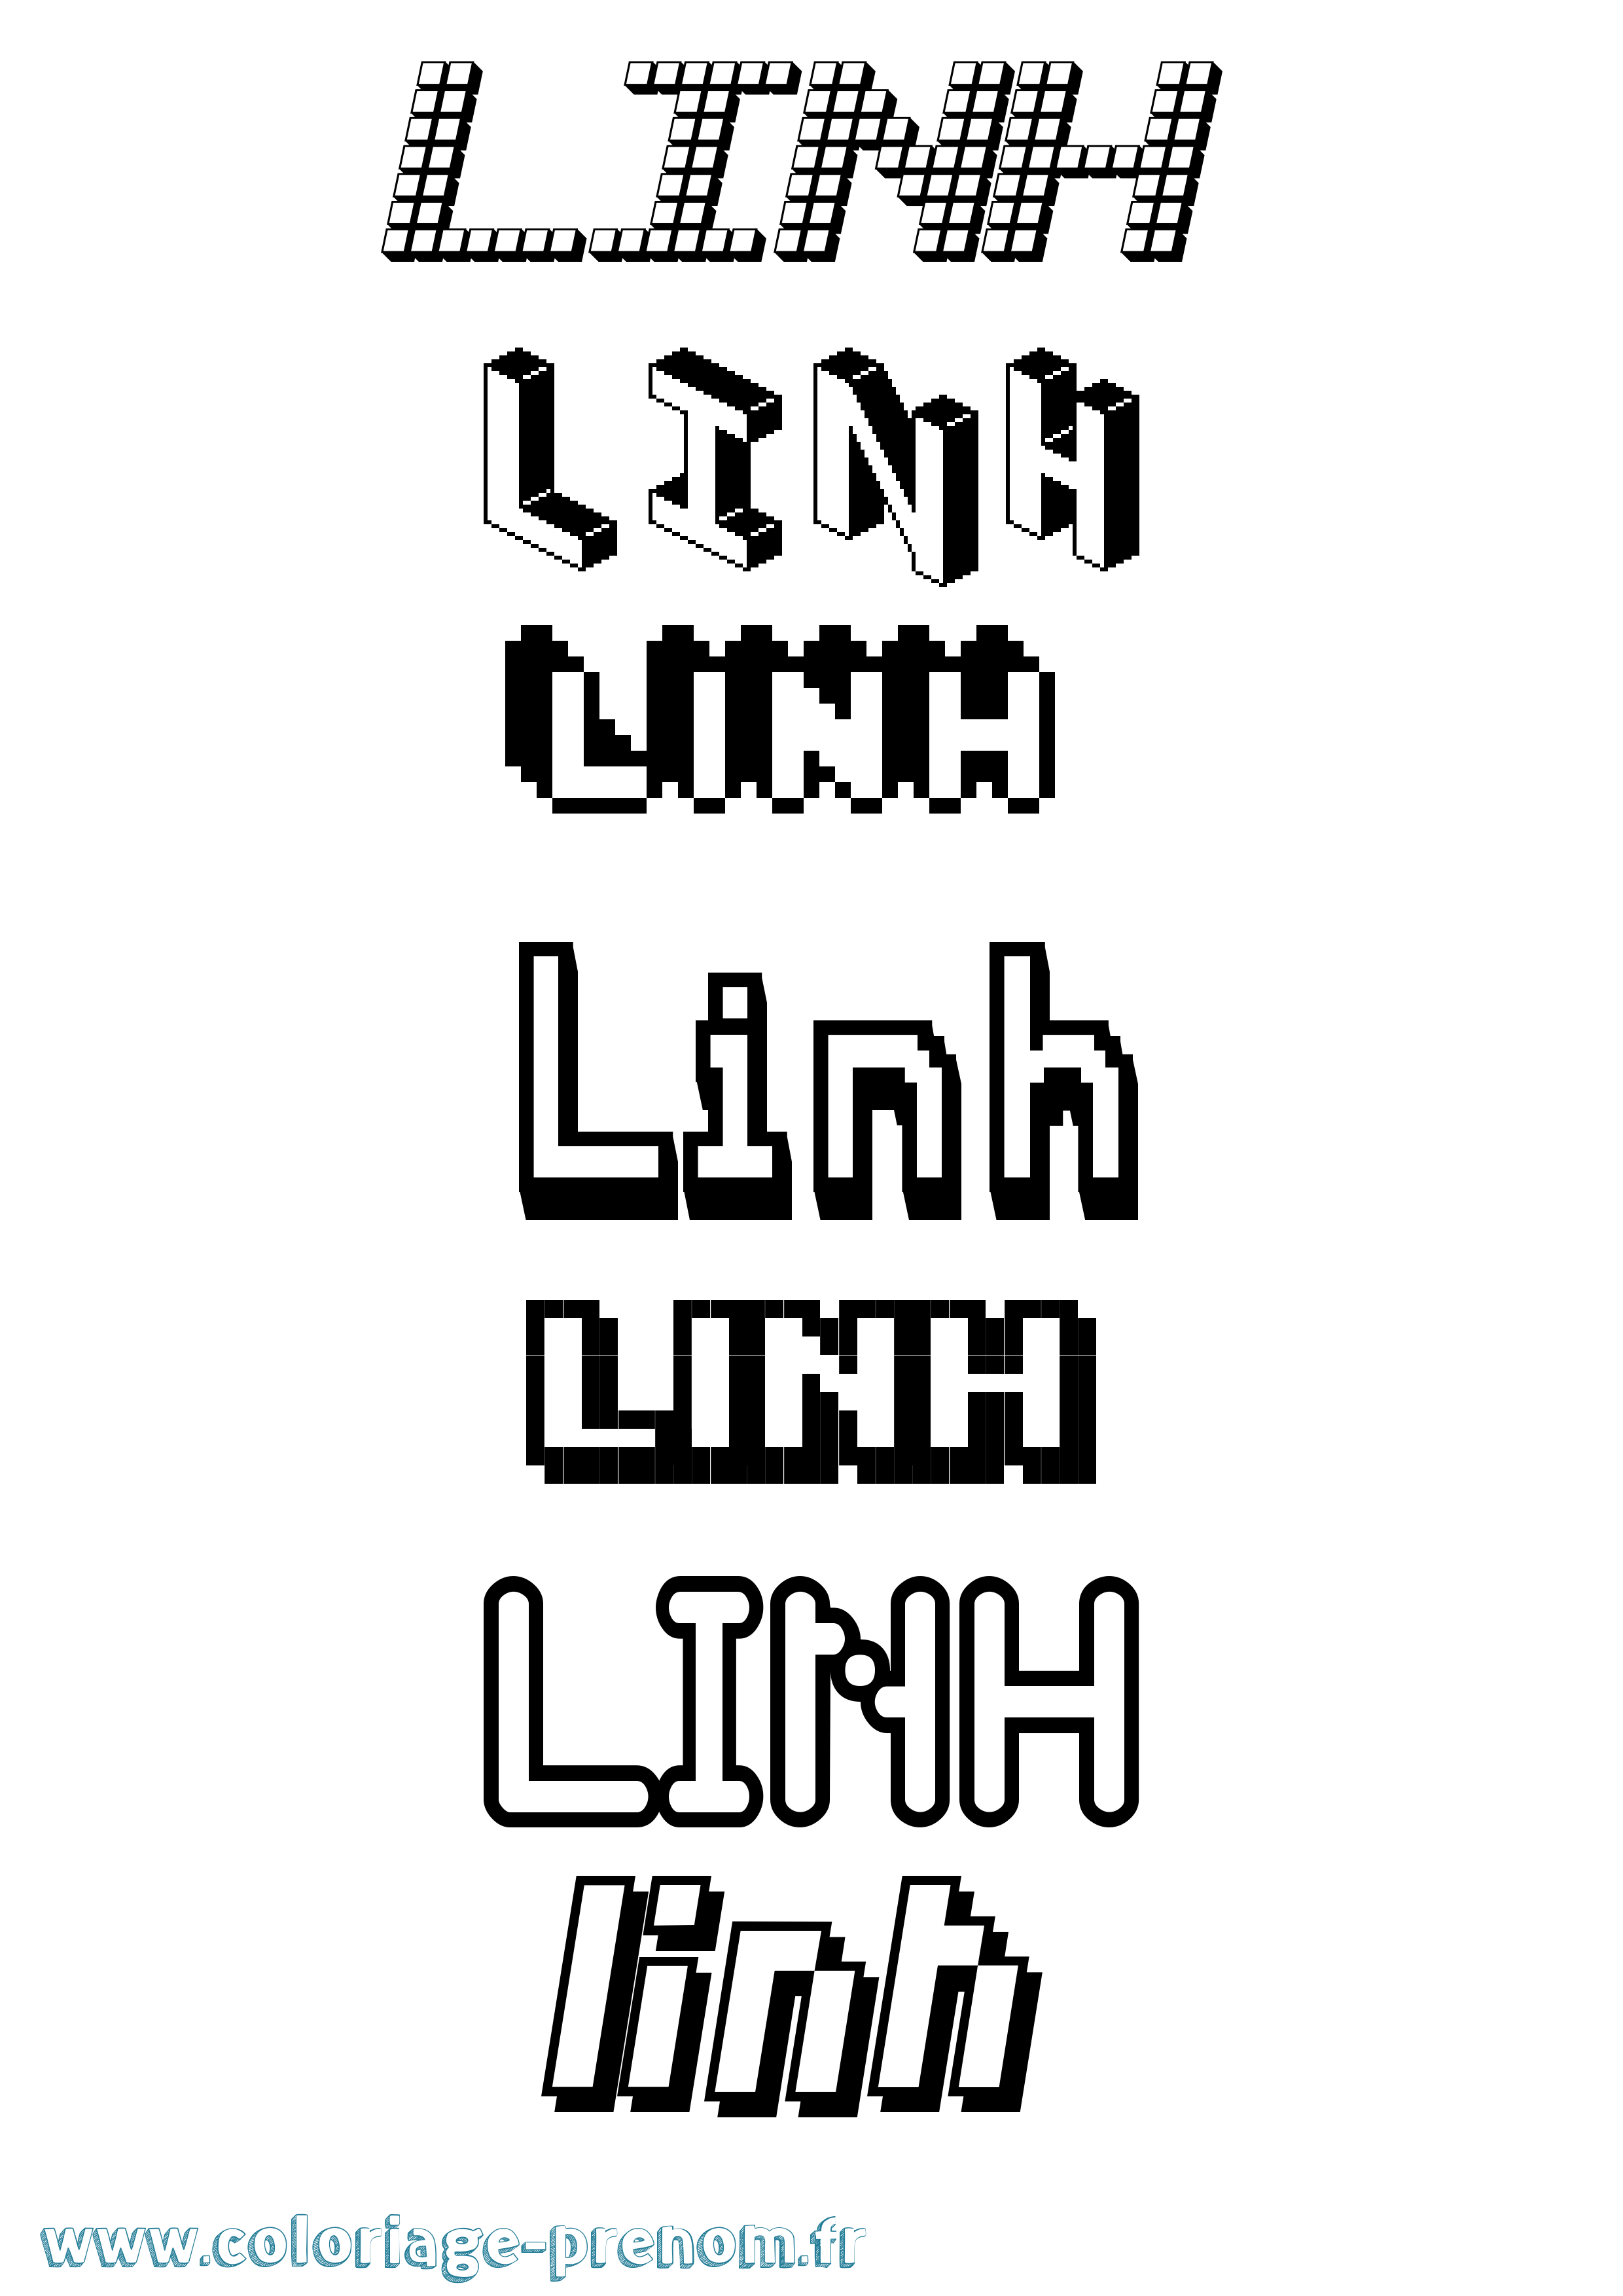 Coloriage prénom Linh Pixel